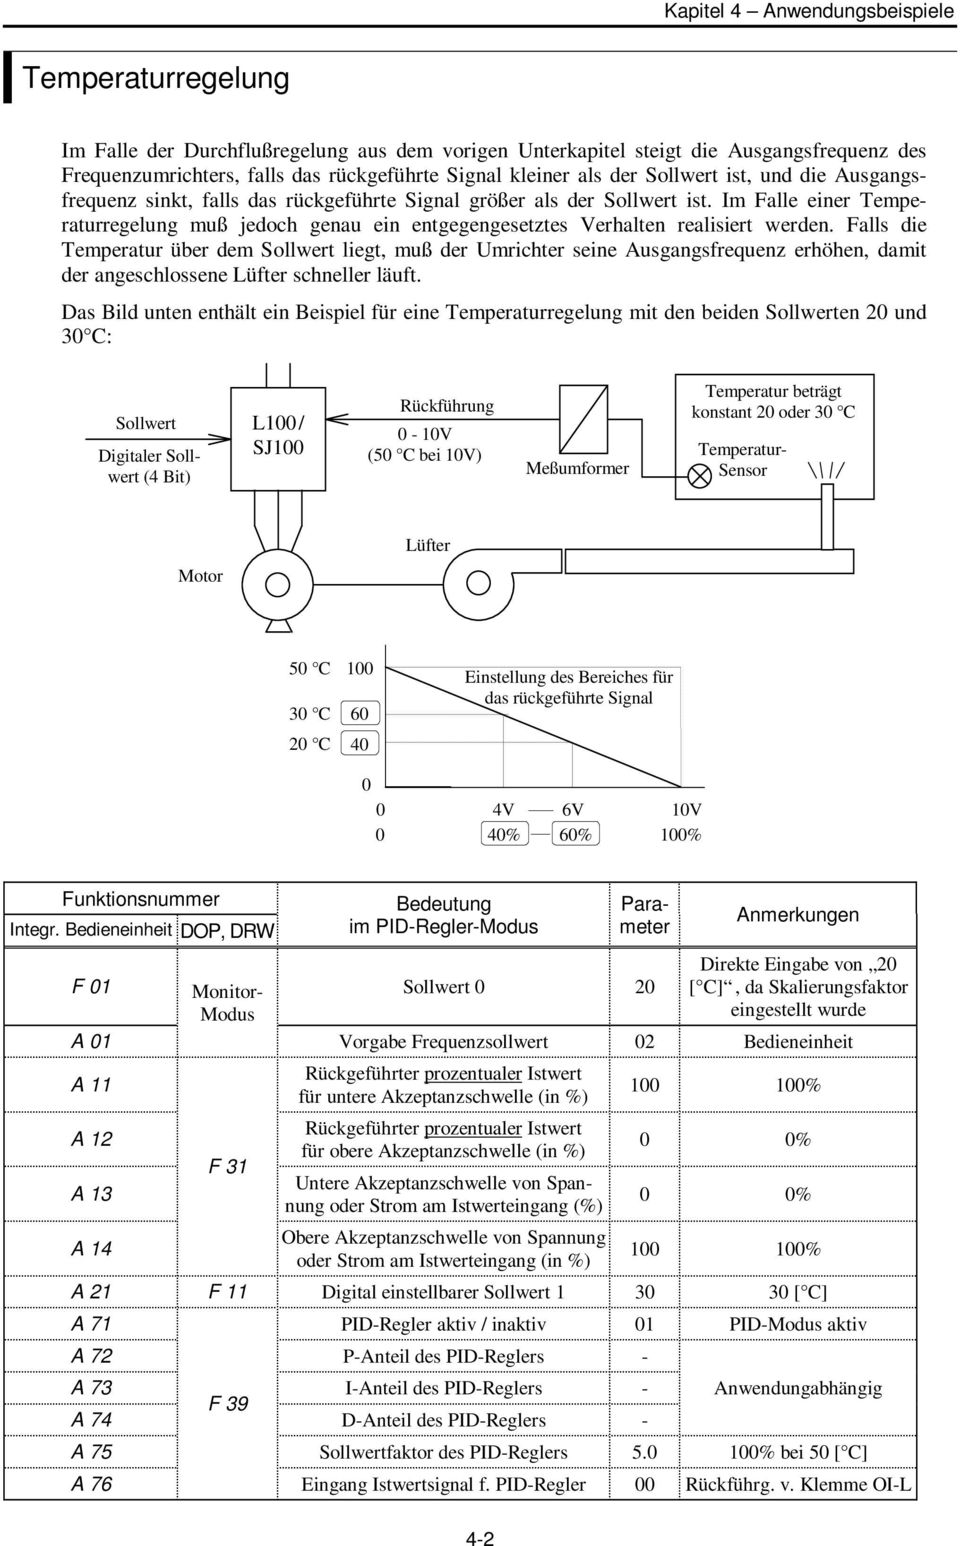 Falls die Temperatur über dem liegt, muß der Umrichter seine Ausgangsfrequenz erhöhen, damit der angeschlossene Lüfter schneller läuft.